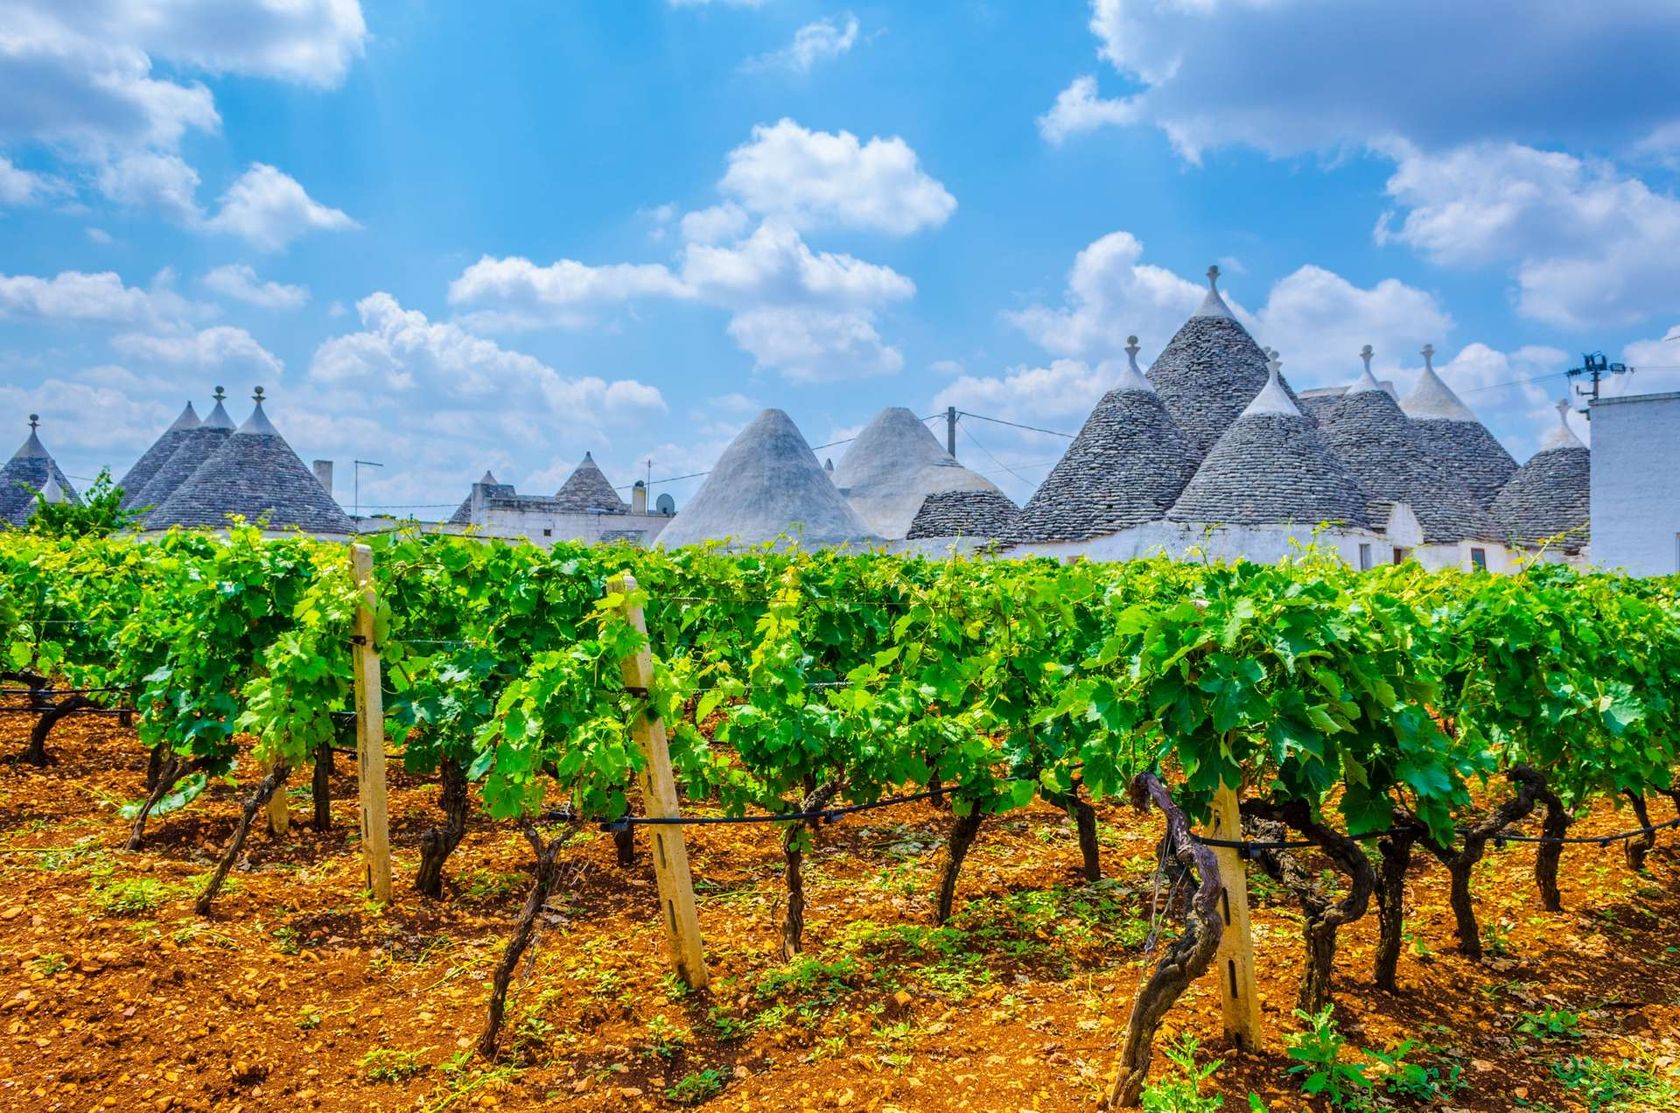 Italië Alberobello trulli houses en wijngaard